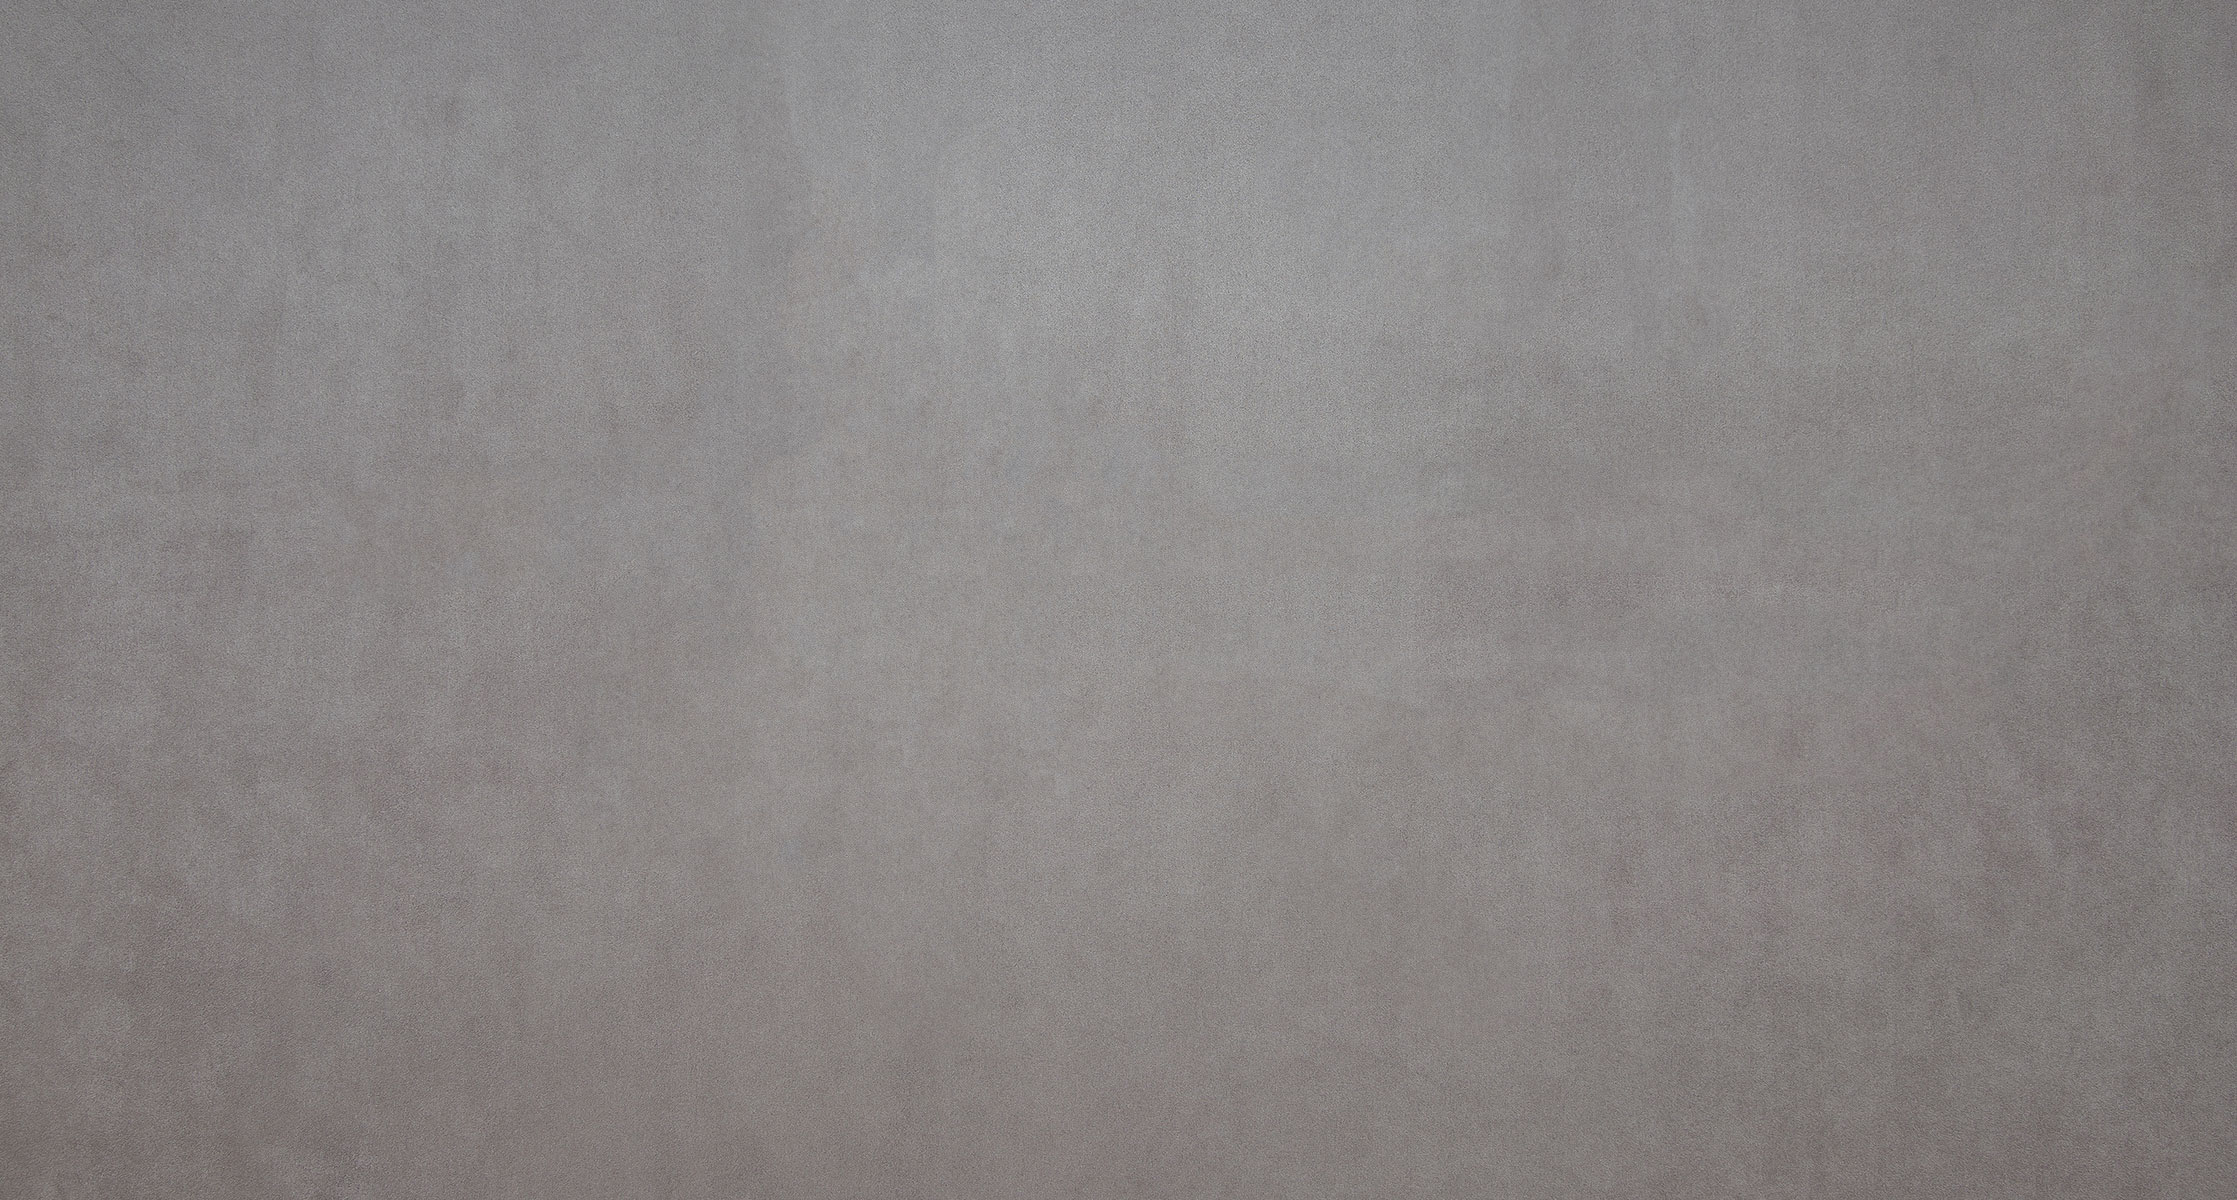 Span 18. 18 Серый цвет. 18% Серый. Ткань - Polaris 18 Grey.